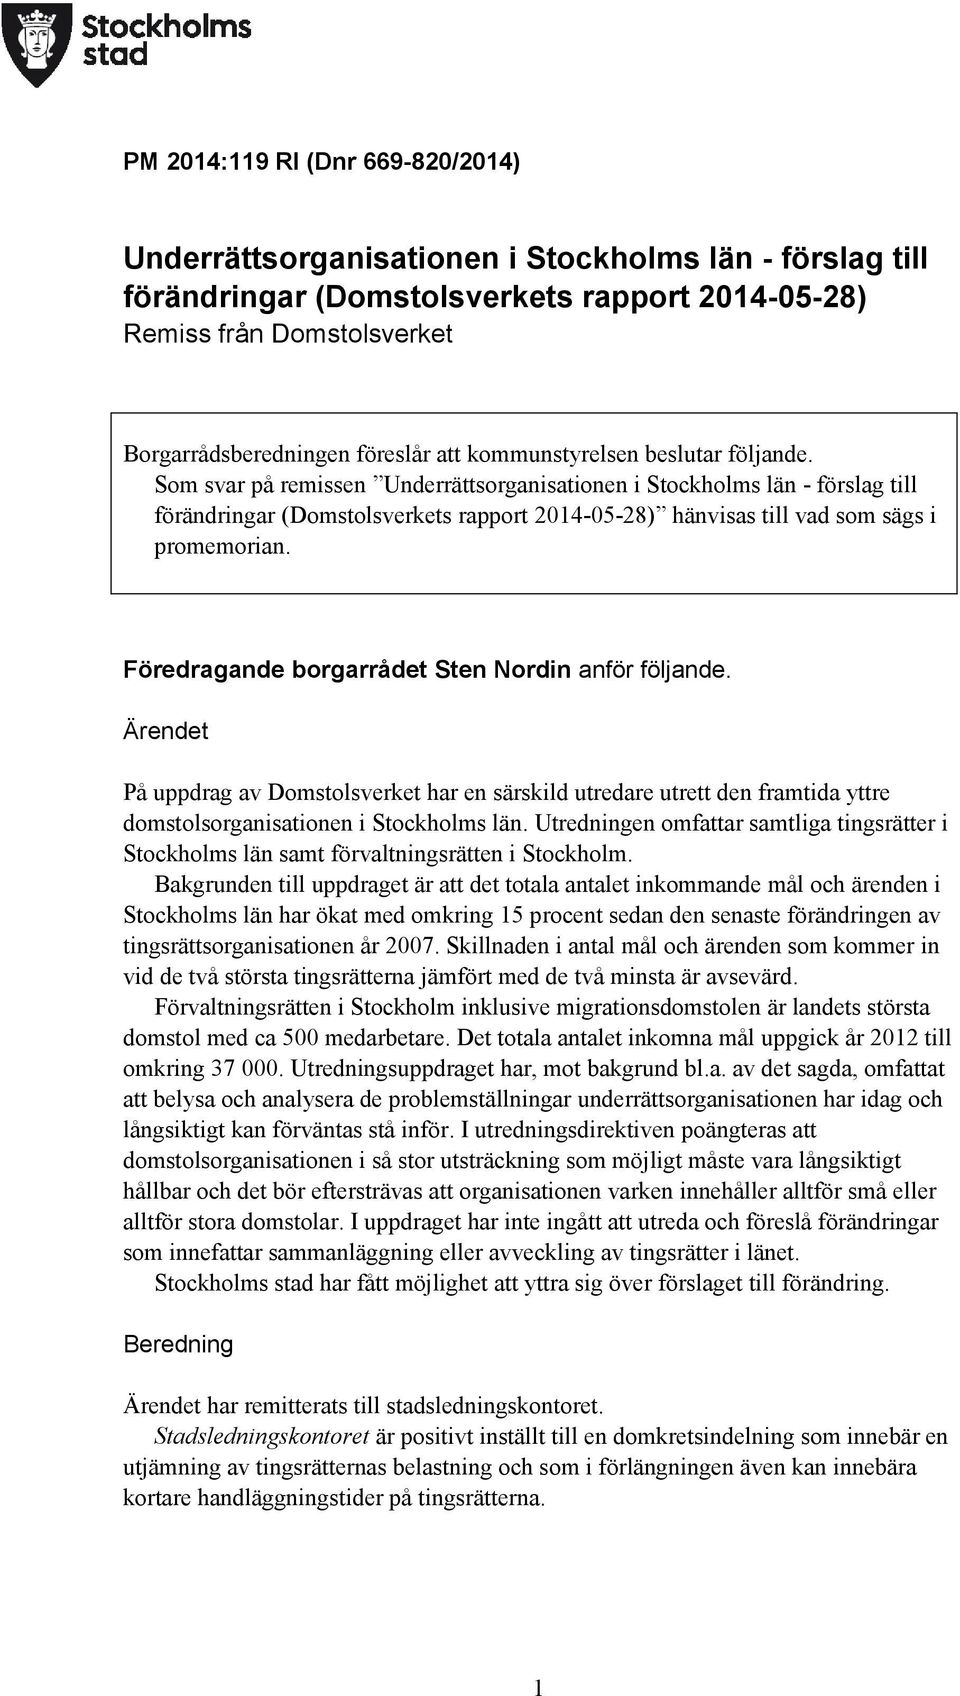 Som svar på remissen Underrättsorganisationen i Stockholms län - förslag till förändringar (Domstolsverkets rapport 2014-05-28) hänvisas till vad som sägs i promemorian.